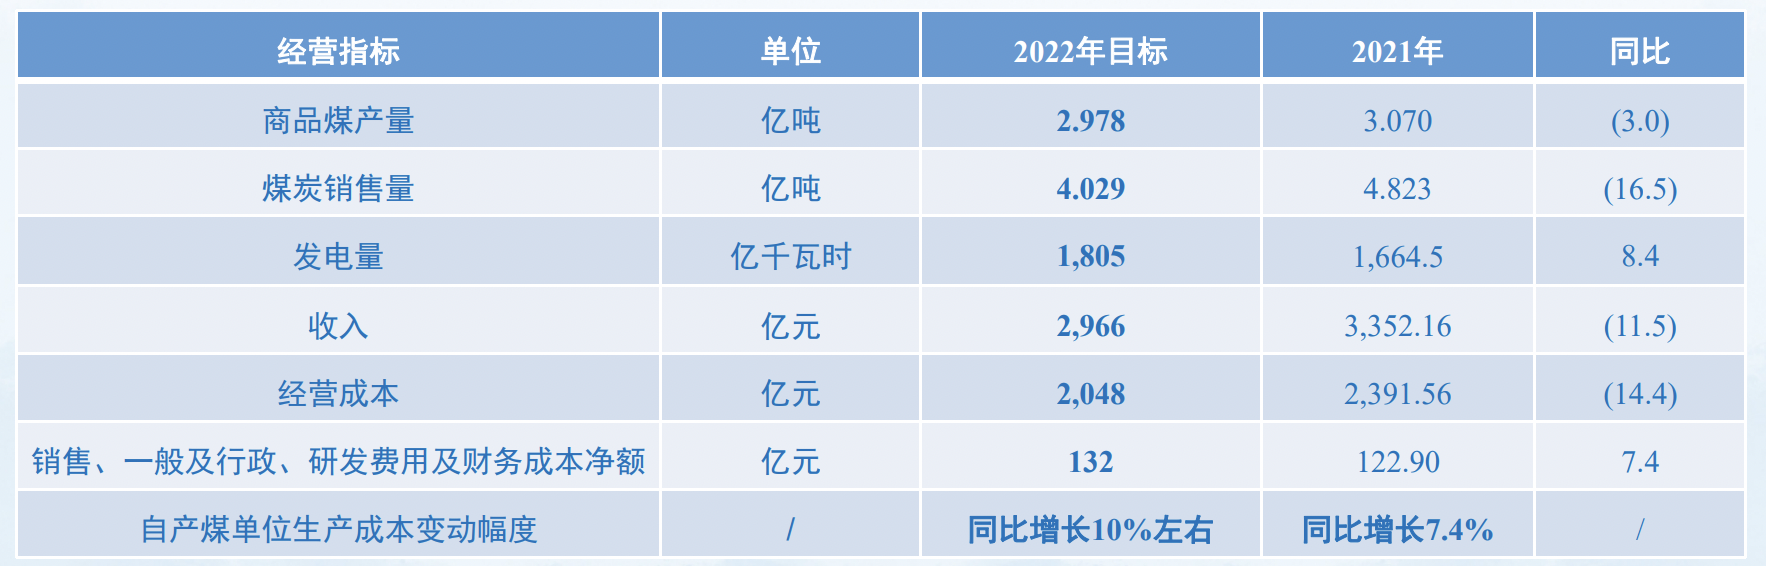  图片来源：上海证券交易所路演中心中国神华2021年度业绩说明会PPT